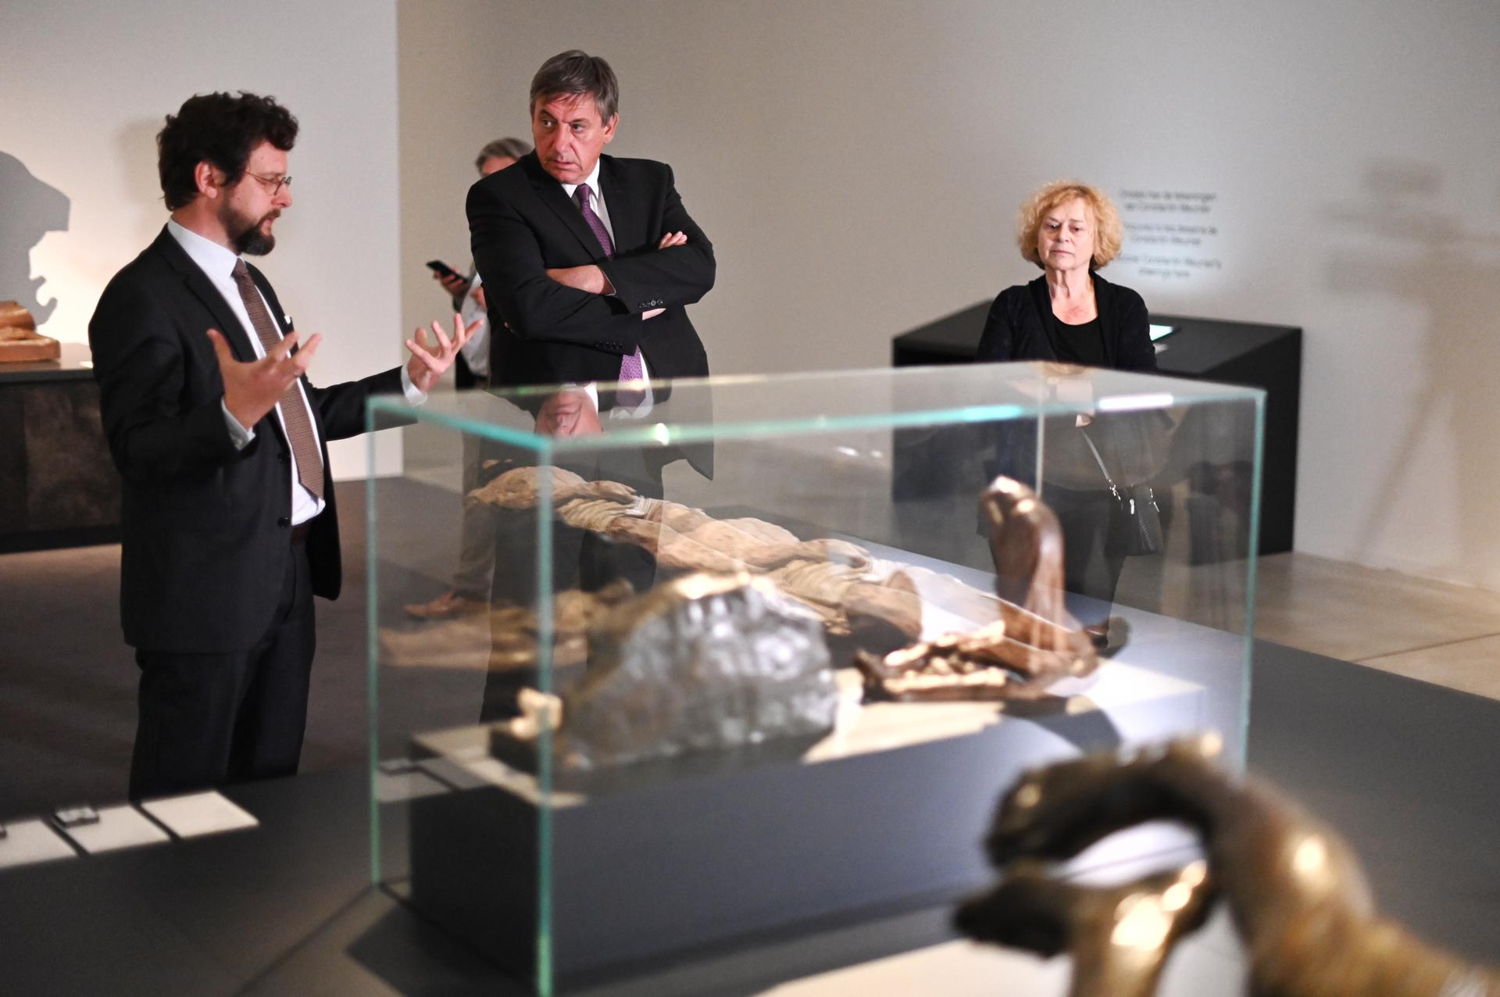 Commissaire dr Peter Carpreau et Ministre-président Jan Jambon dans l'expo 'Rodin, Meunier & Minne' (c) Jasper Jacobs